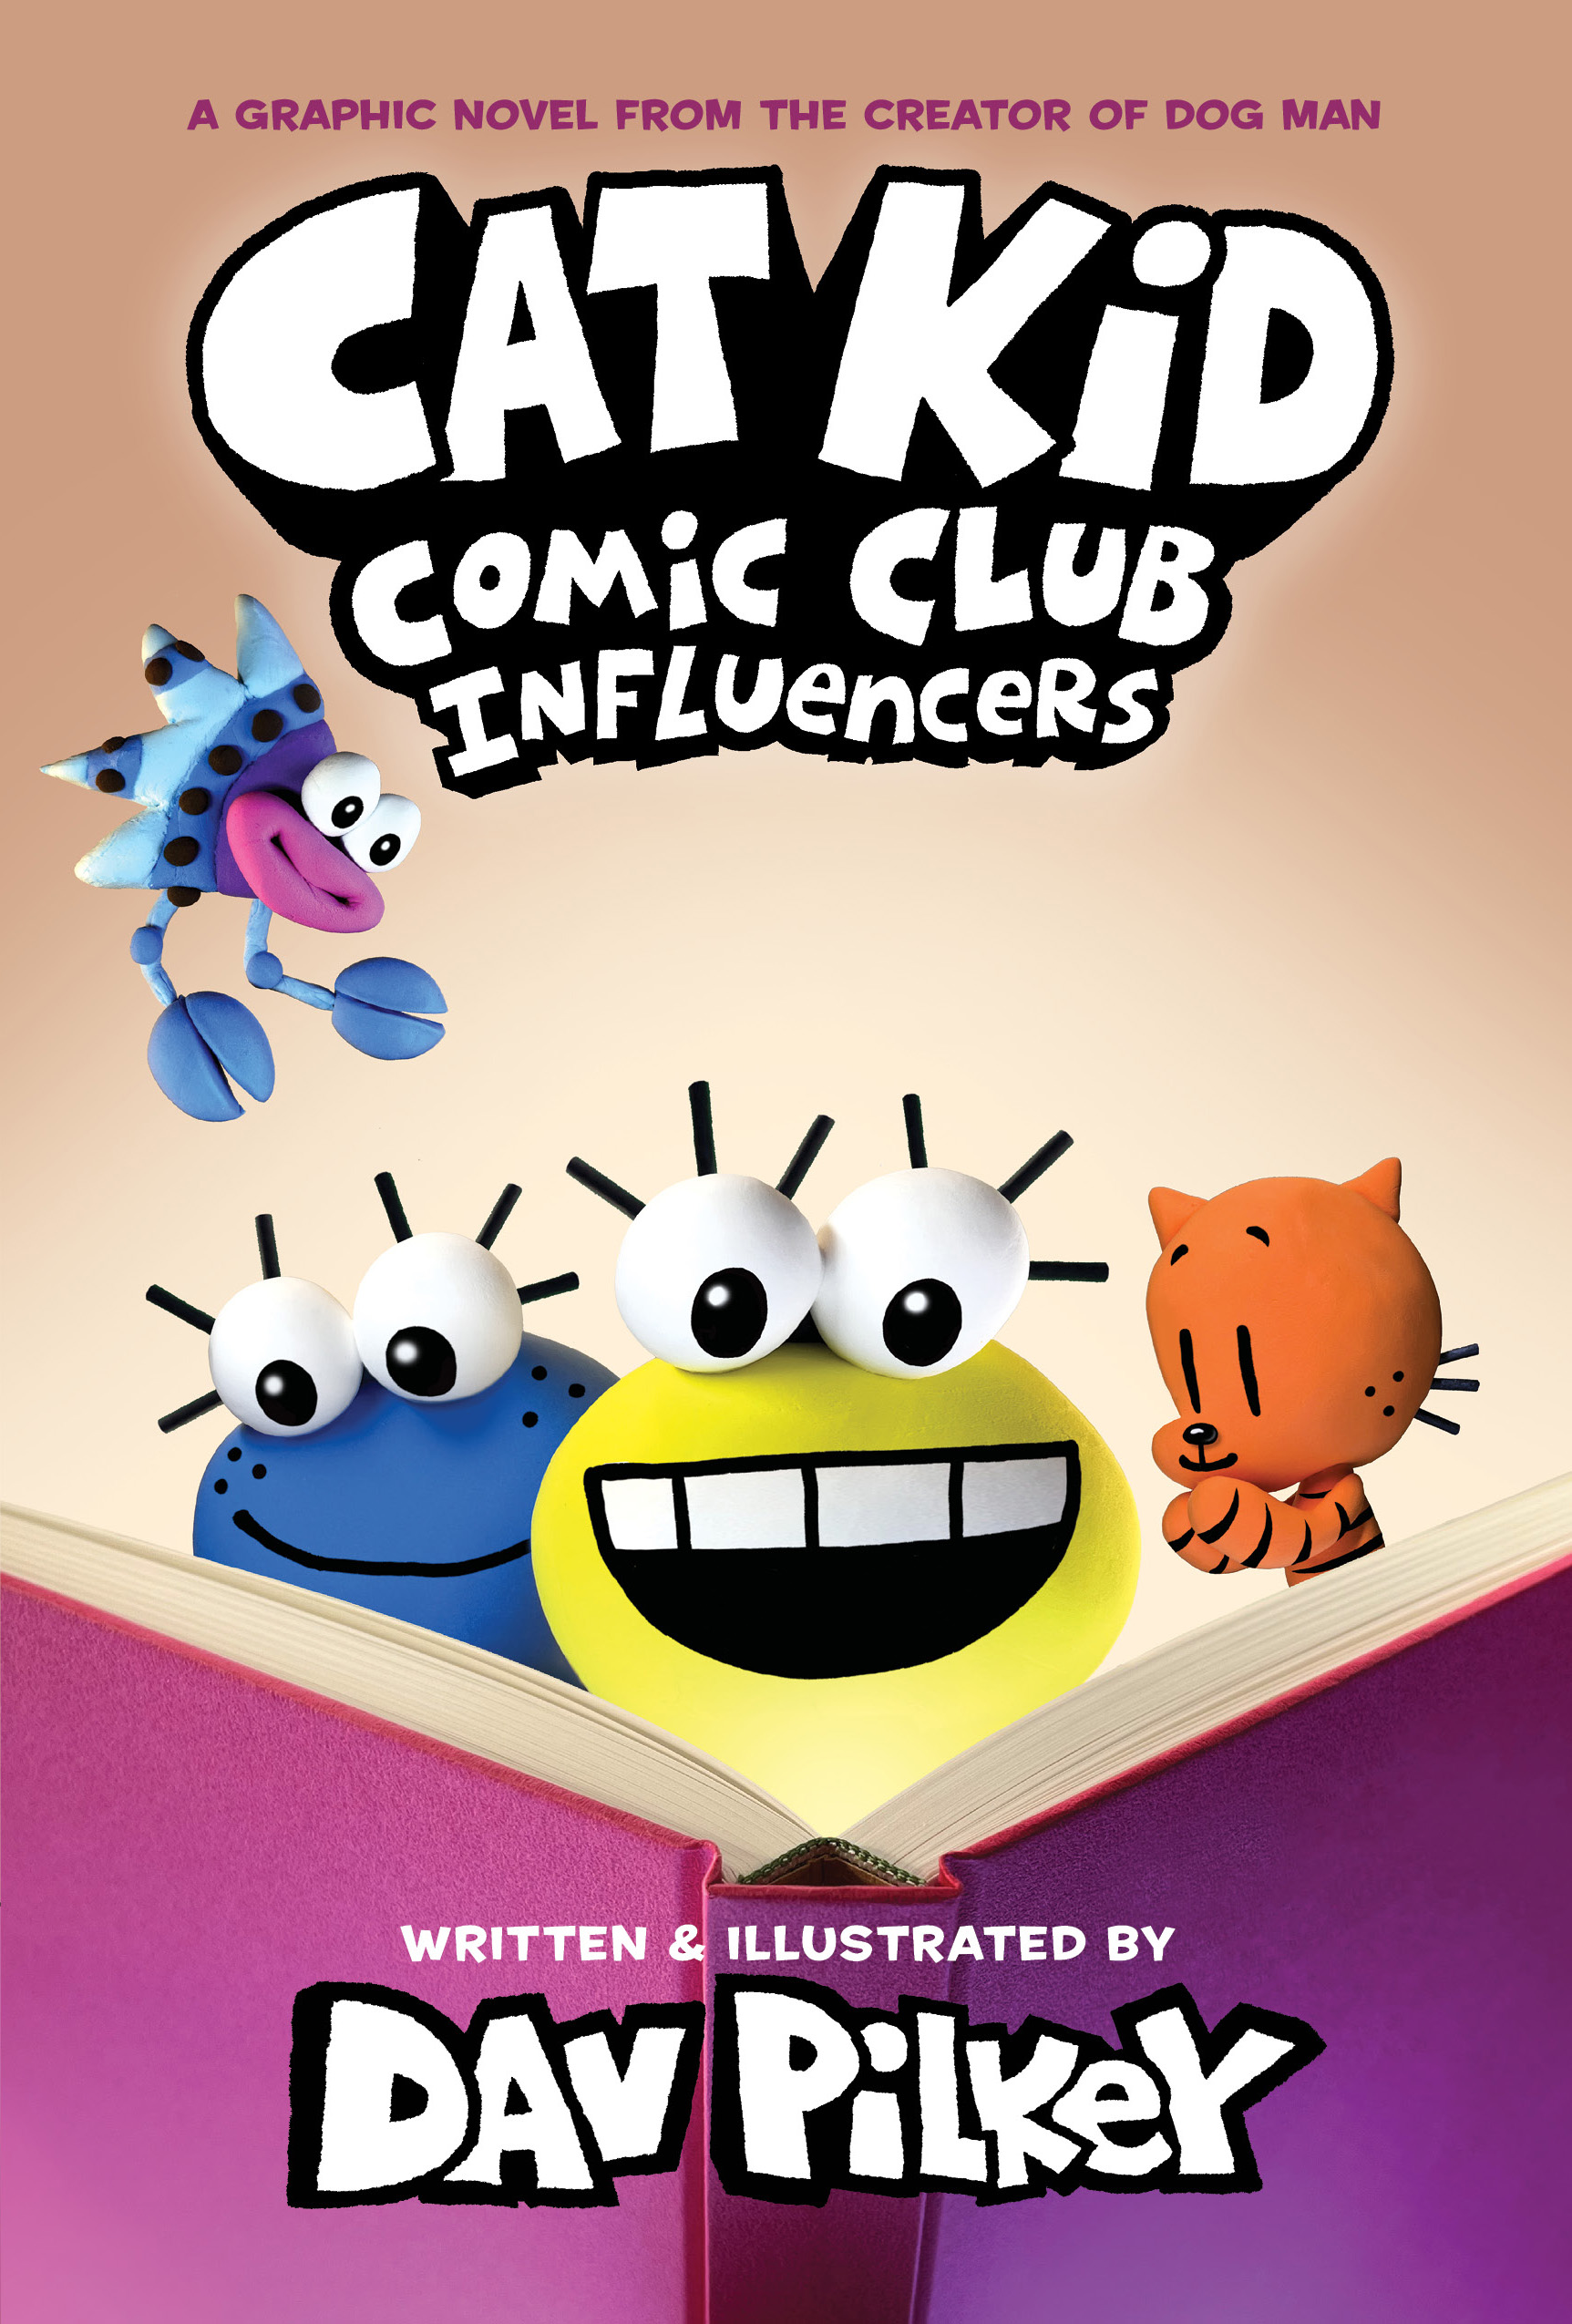 Cat Kid Comic Club: Influencers (Cat Kid Comic Club, #5)